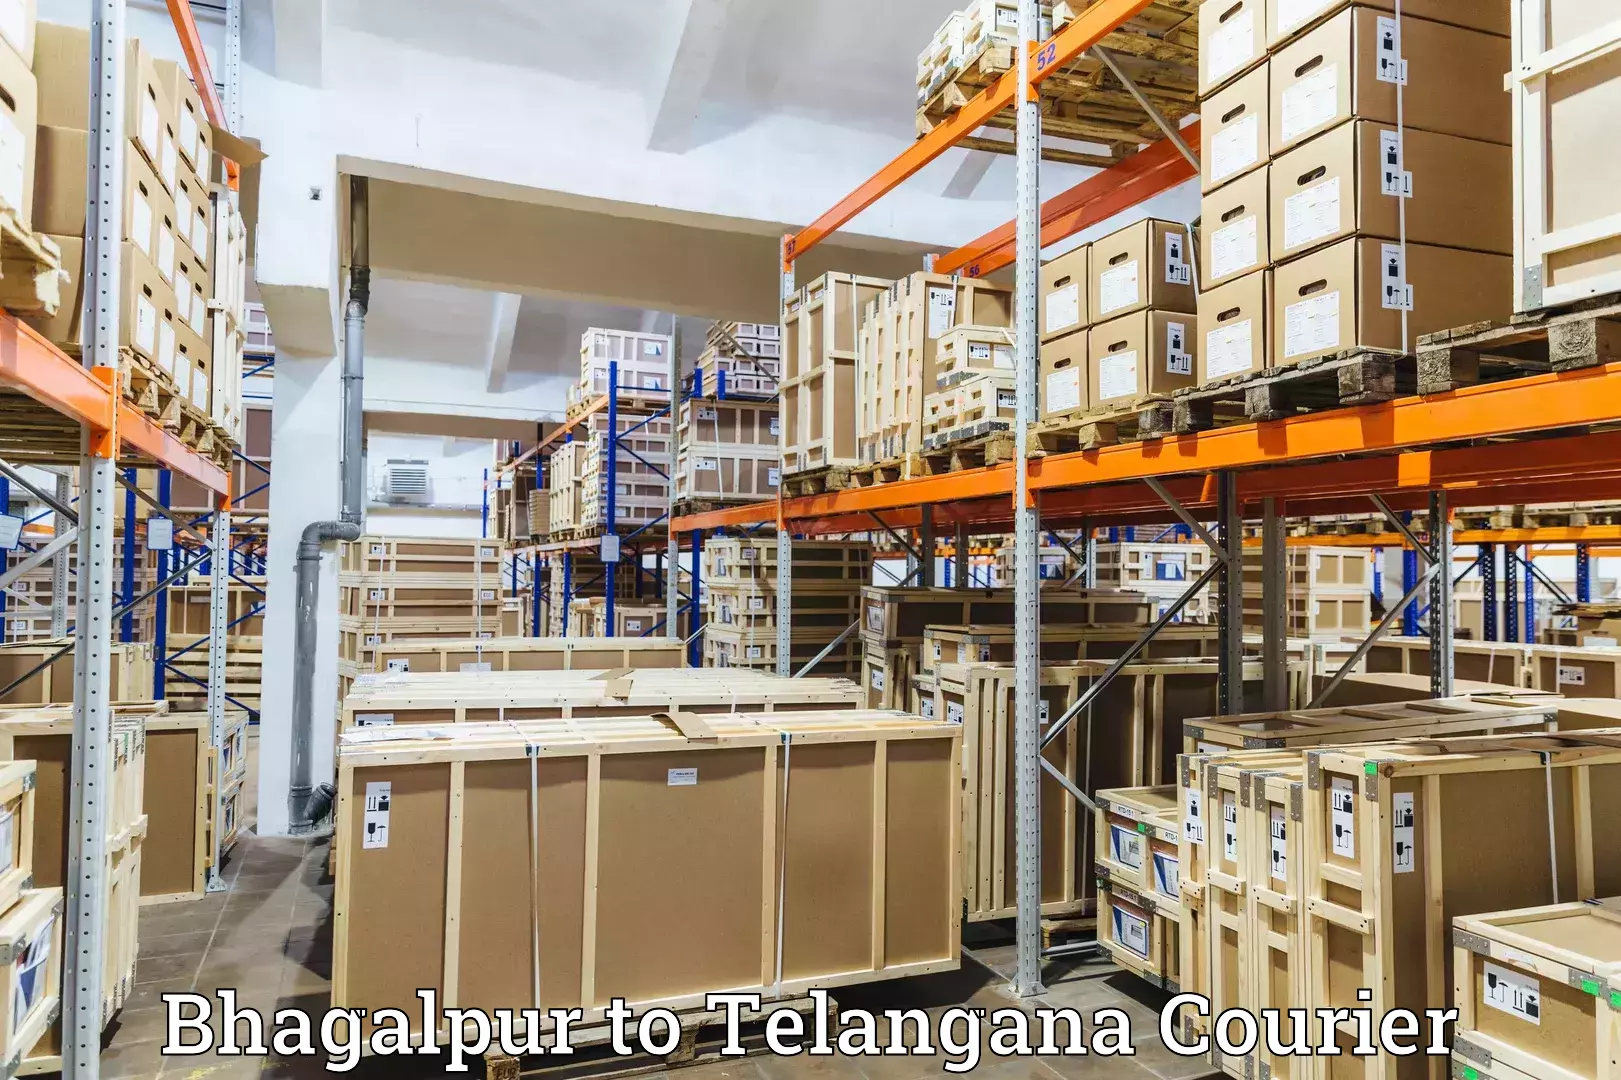 Next-generation courier services Bhagalpur to Madhavaram